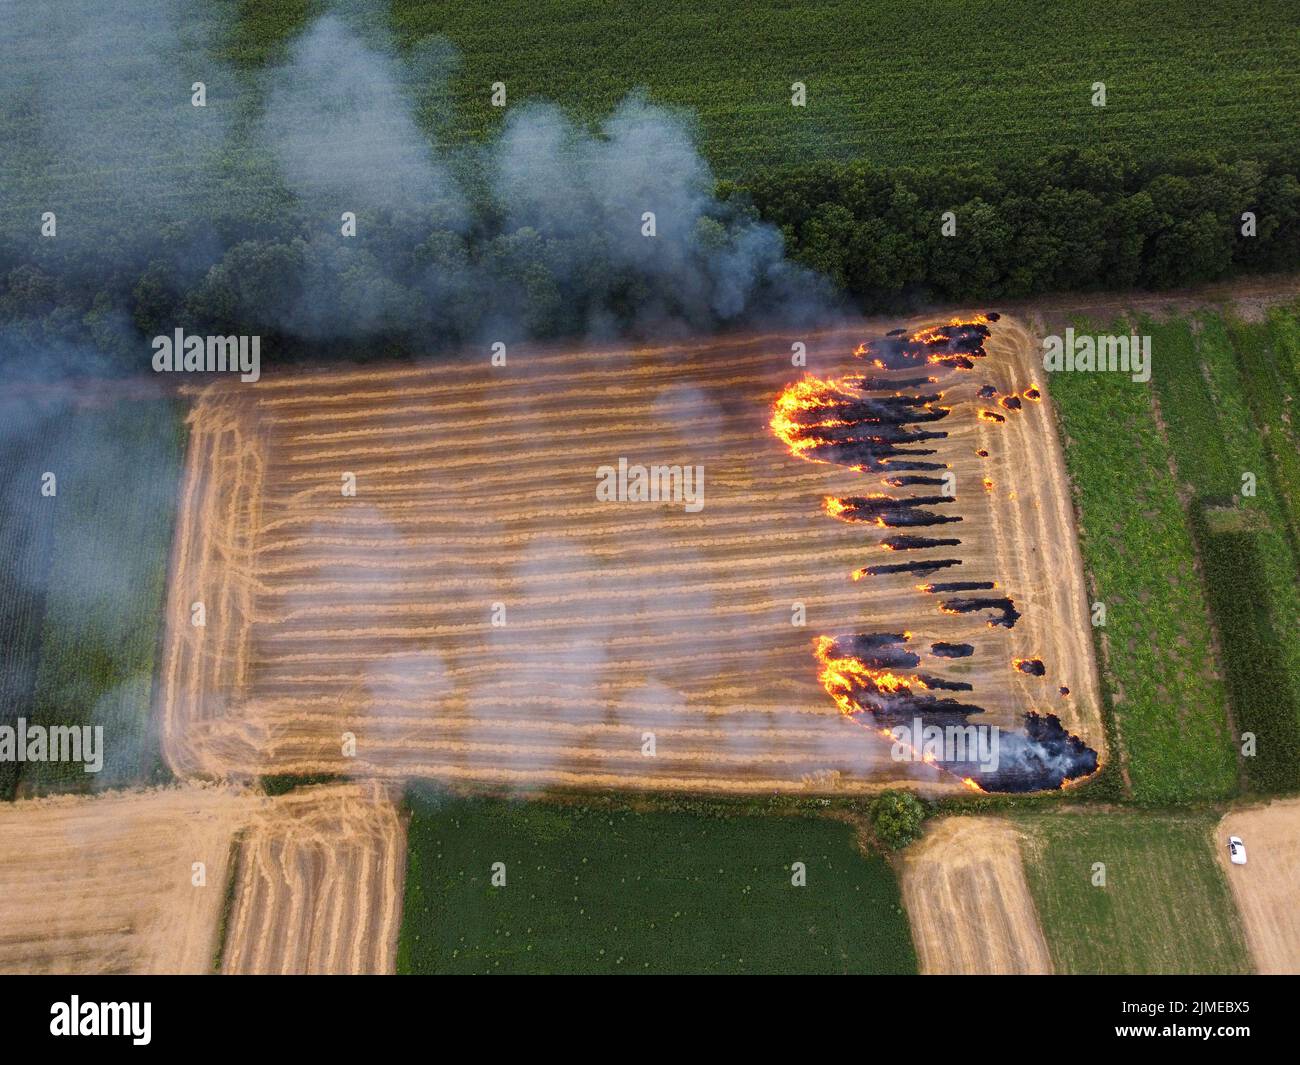 Appezzamento di terreno con paglia, incendio nel campo, combustione di residui di paglia, inquinamento dell'aria ambientale Foto Stock